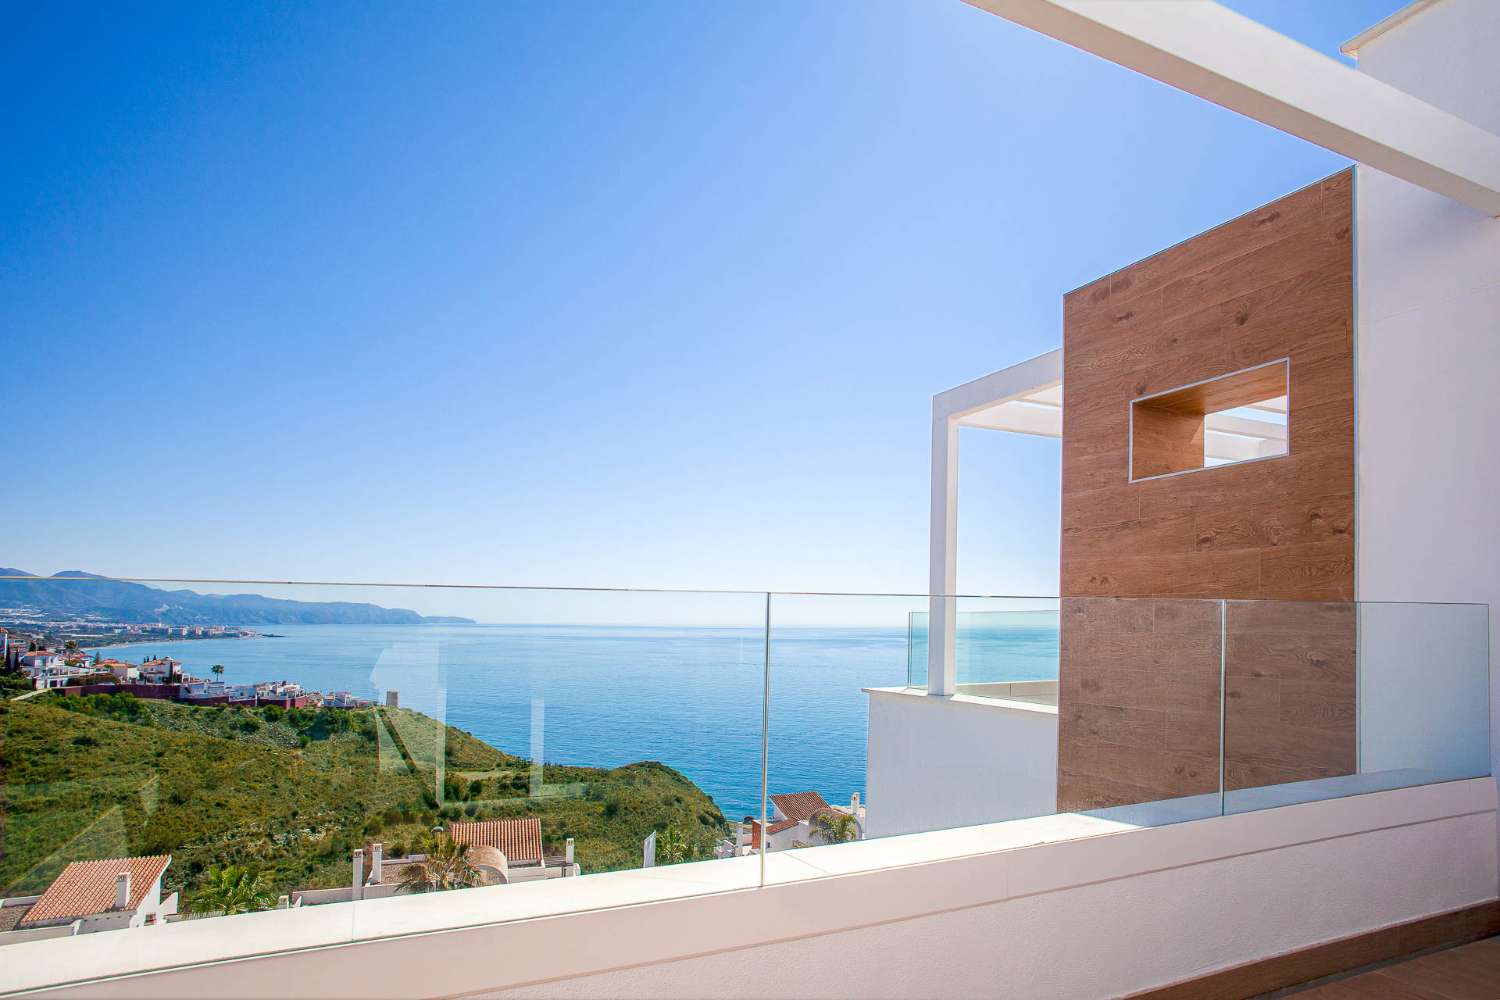 Ático disponible en complejo residencial con increíbles vistas al mar